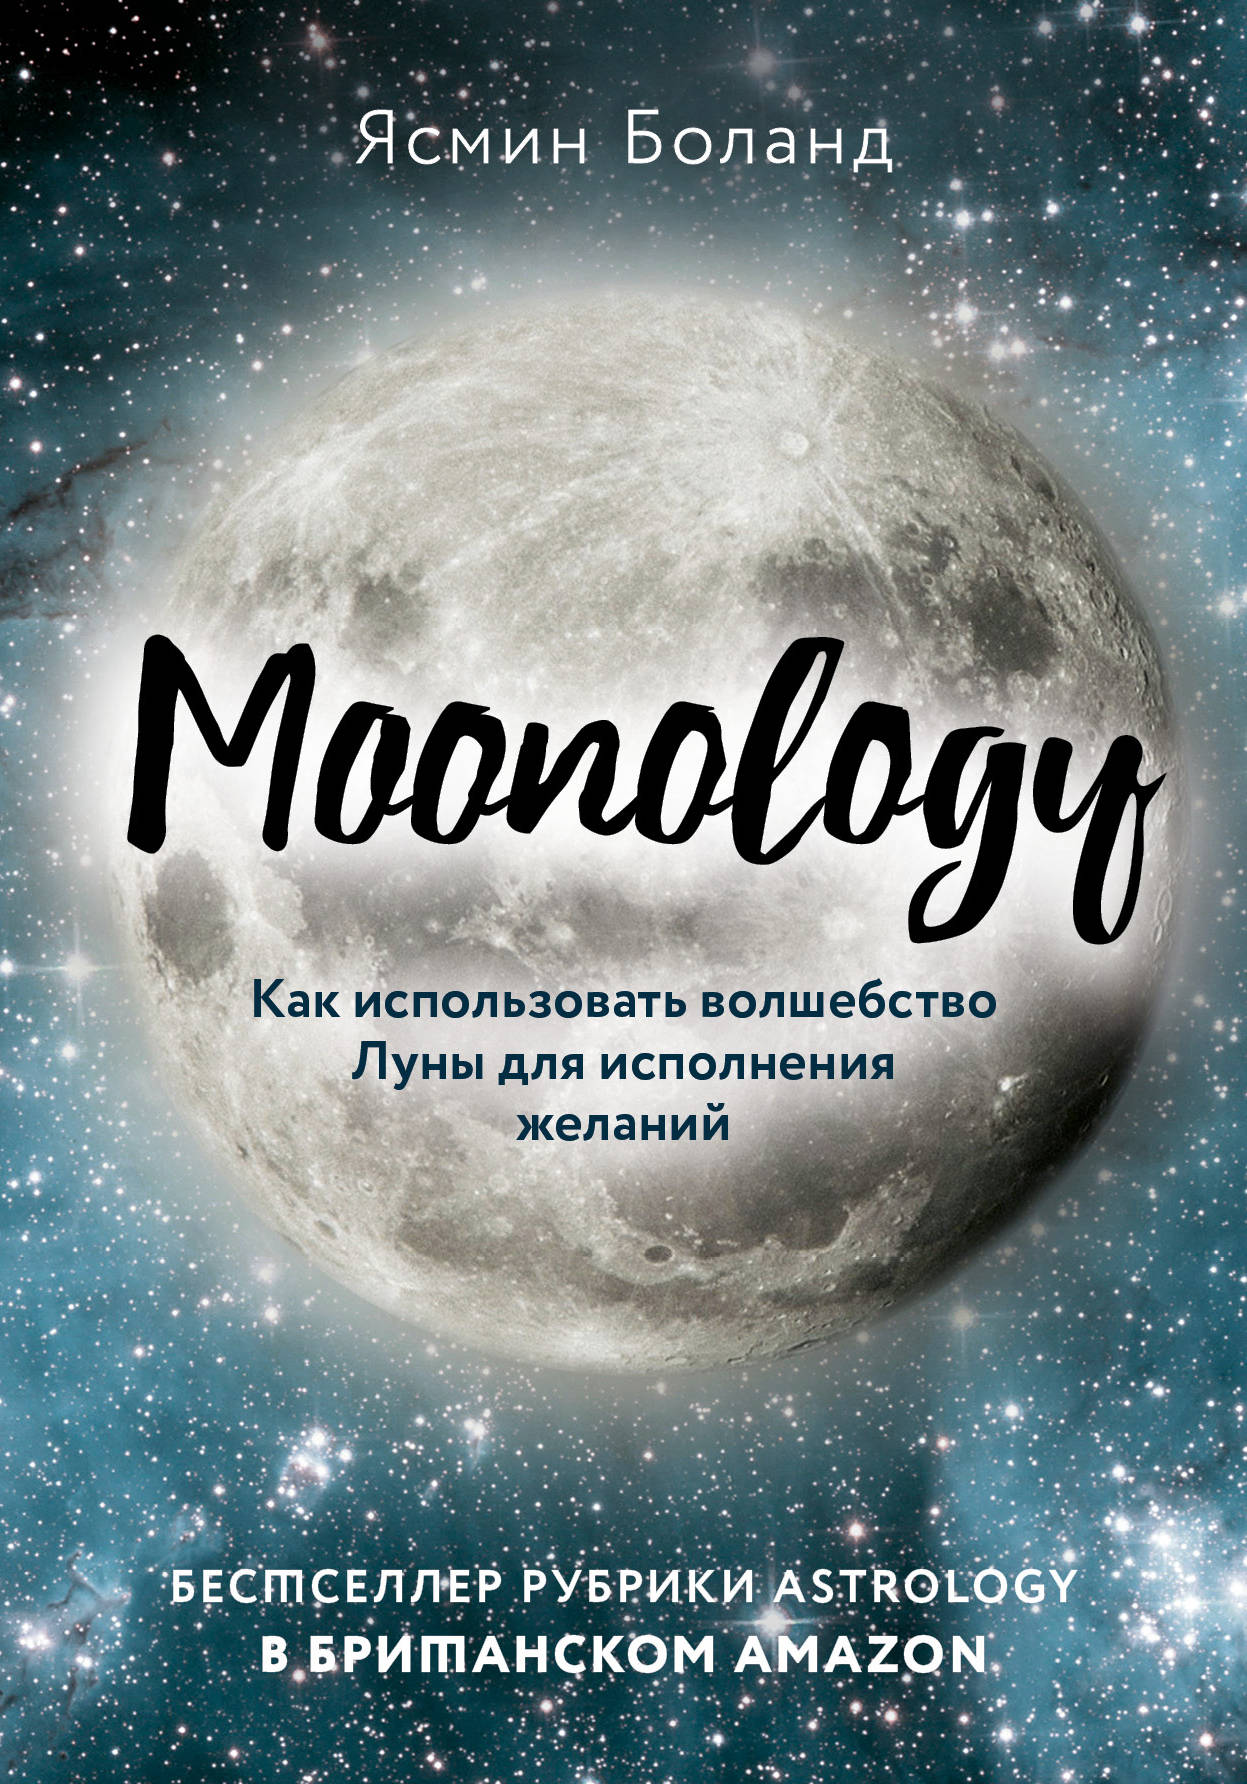 Боланд Я. Moonology. Как использовать волшебство Луны для исполнения желаний 